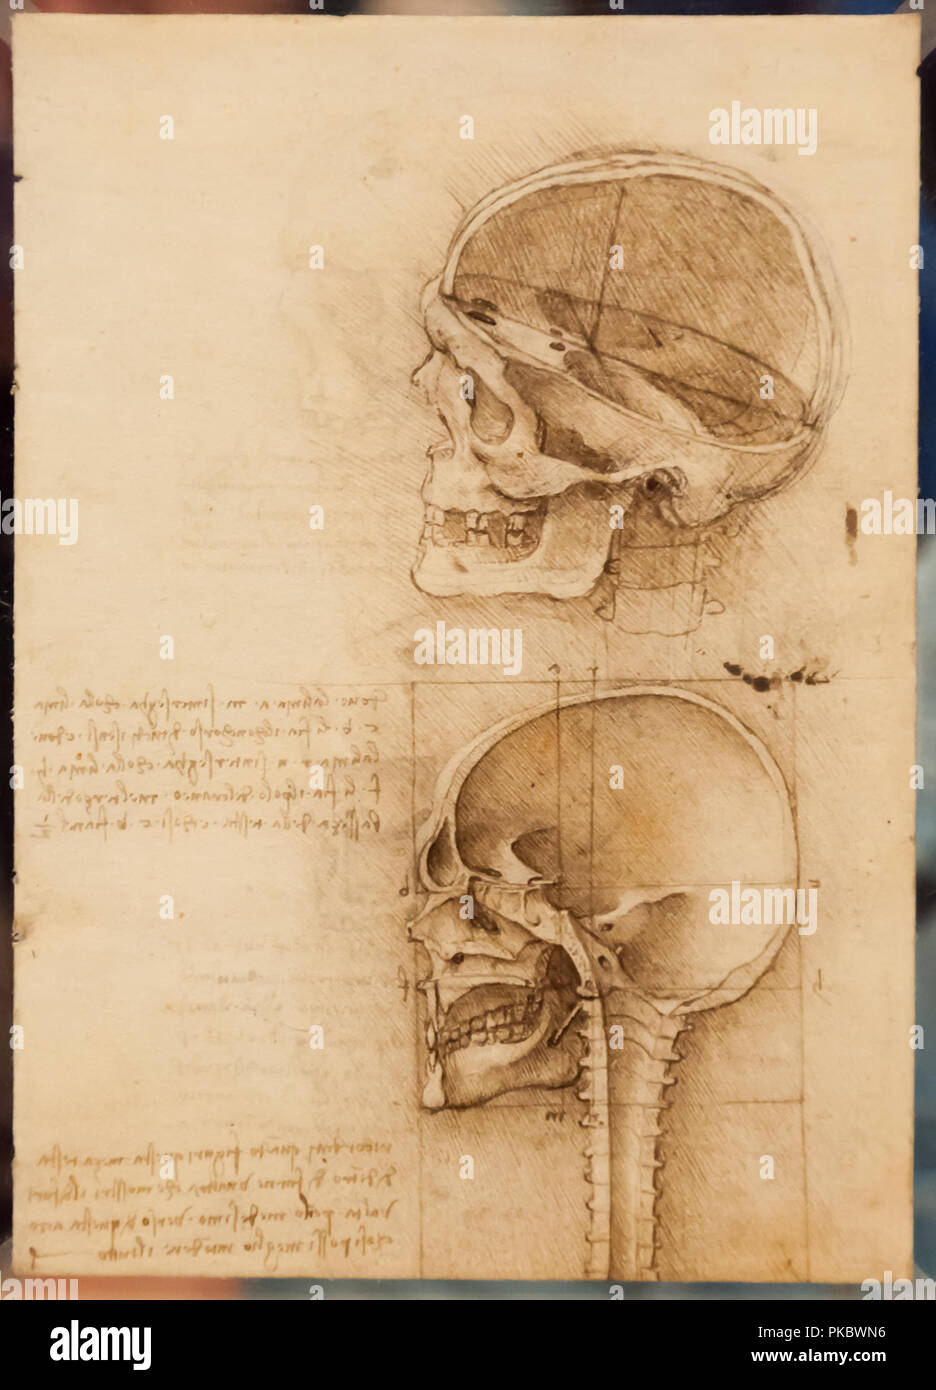 Leonardo da Vinci en matière de dessin anatomique du crâne et de la colonne vertébrale au Queen's Gallery, Londres, Angleterre, Royaume-Uni Banque D'Images